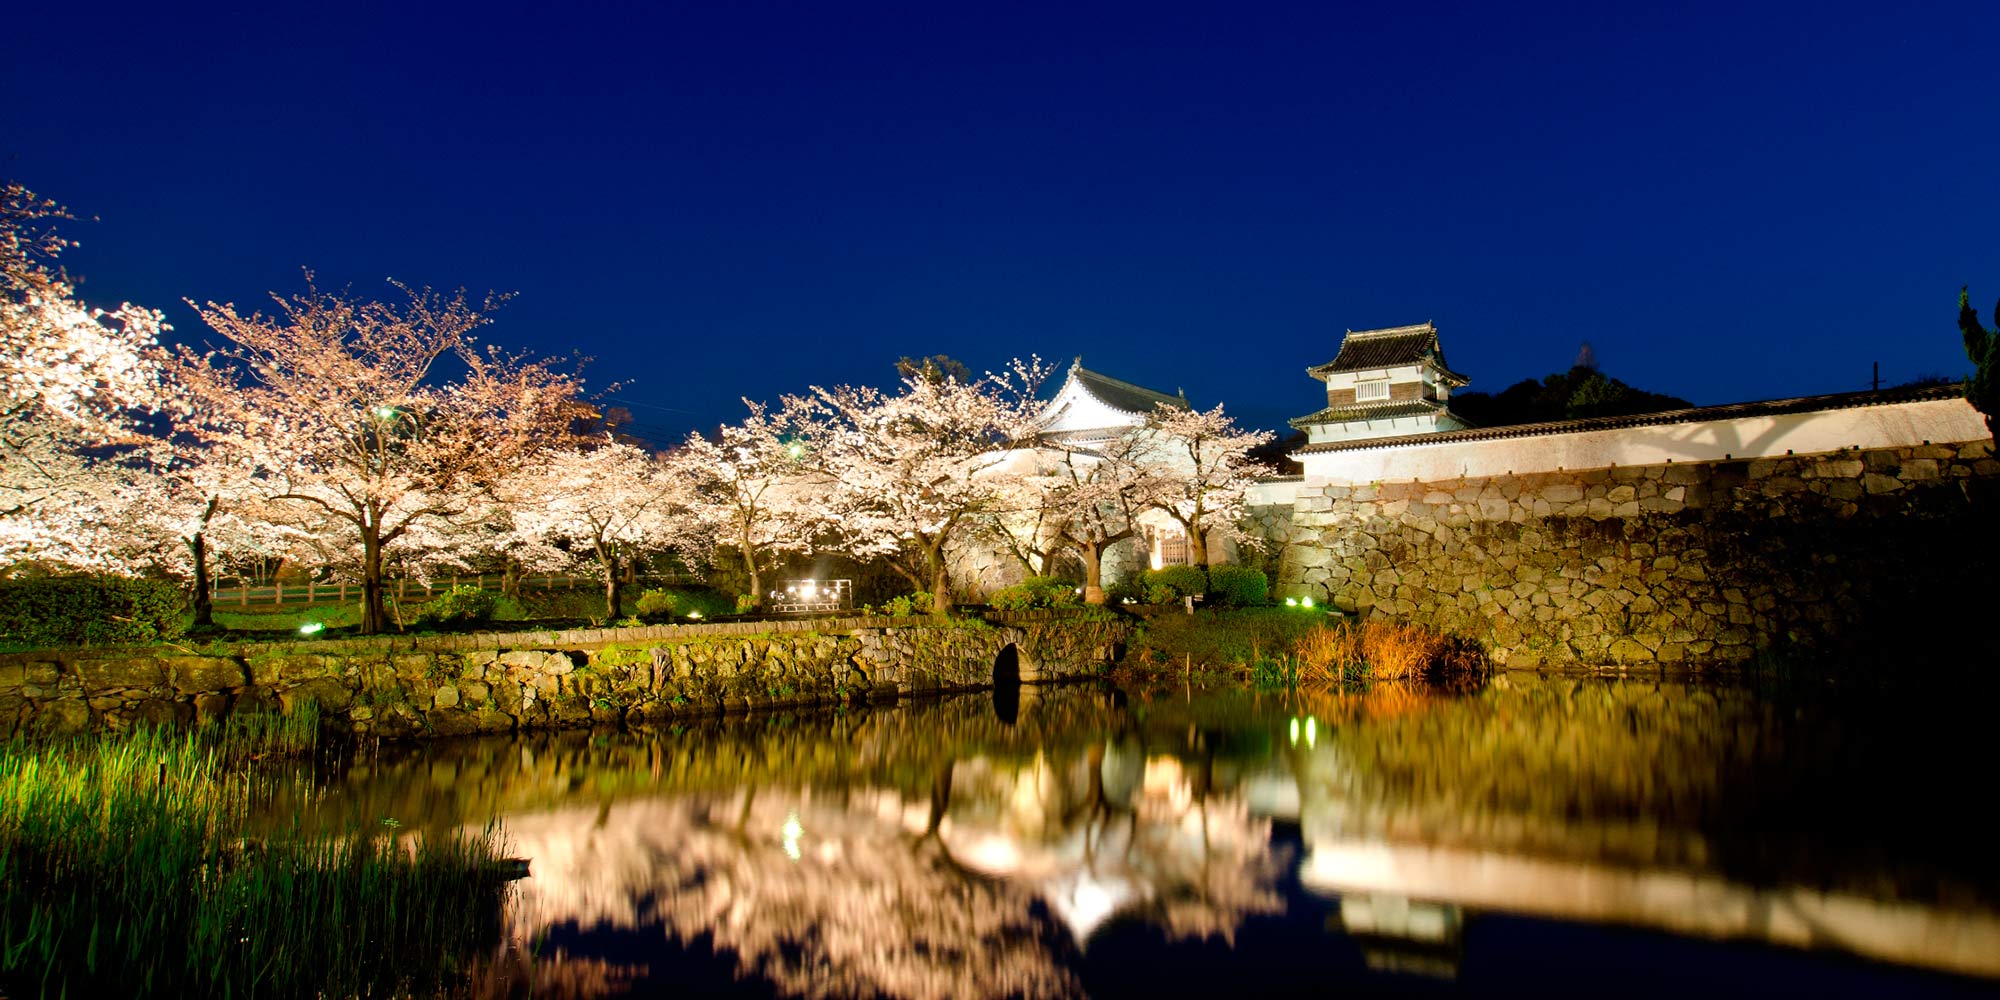 夜の福岡城跡と桜